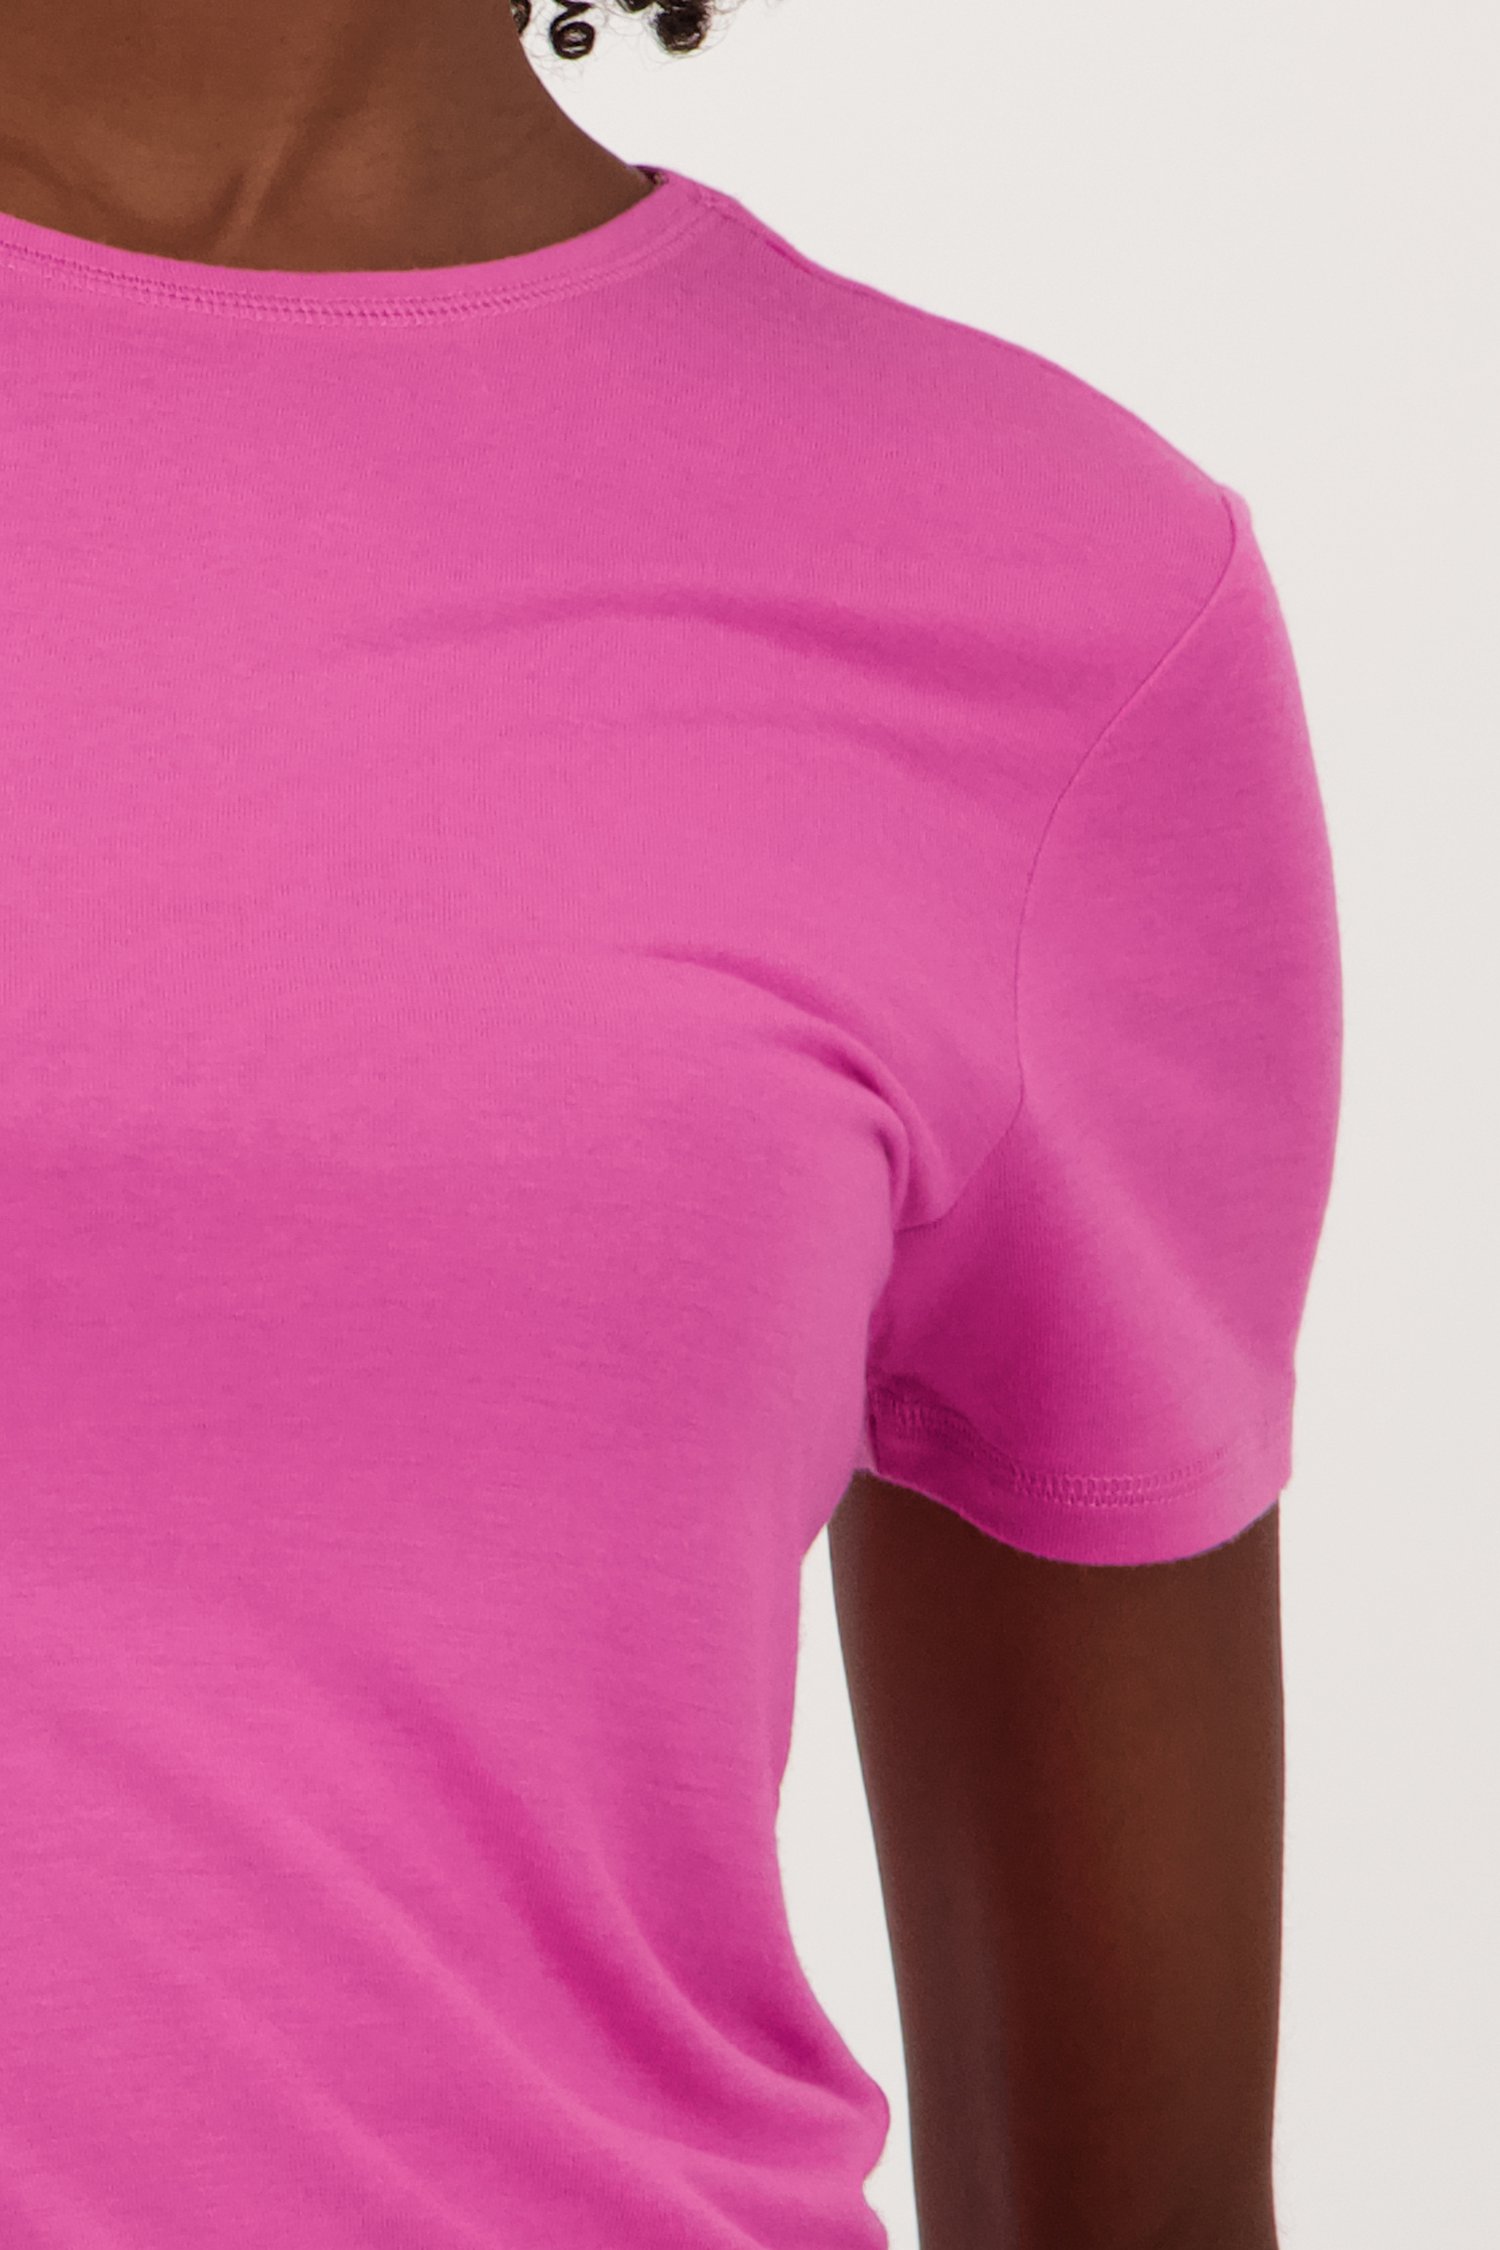 T-shirt rose de JDY pour Femmes